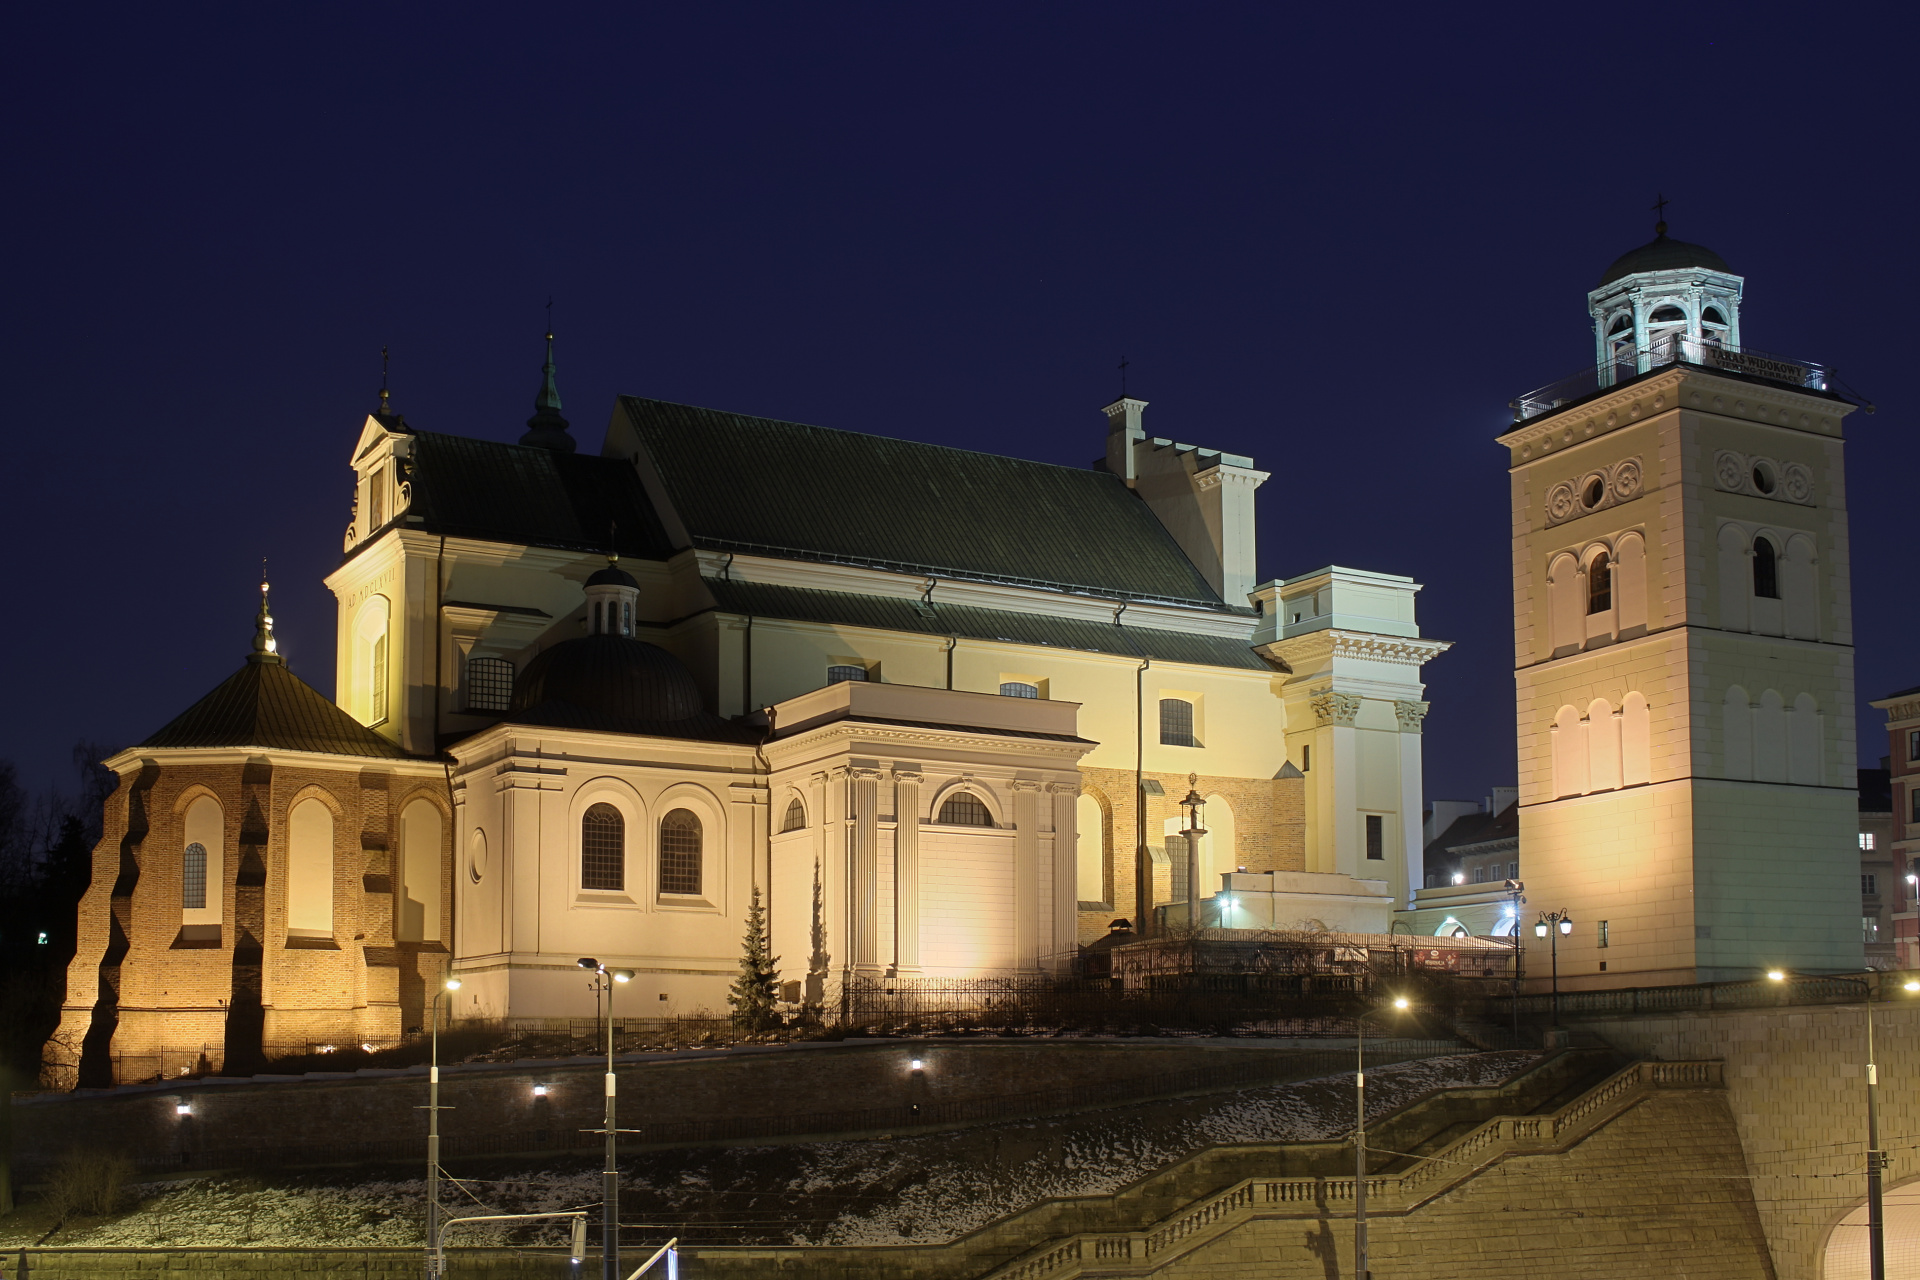 St. Anne's Church (Warsaw)